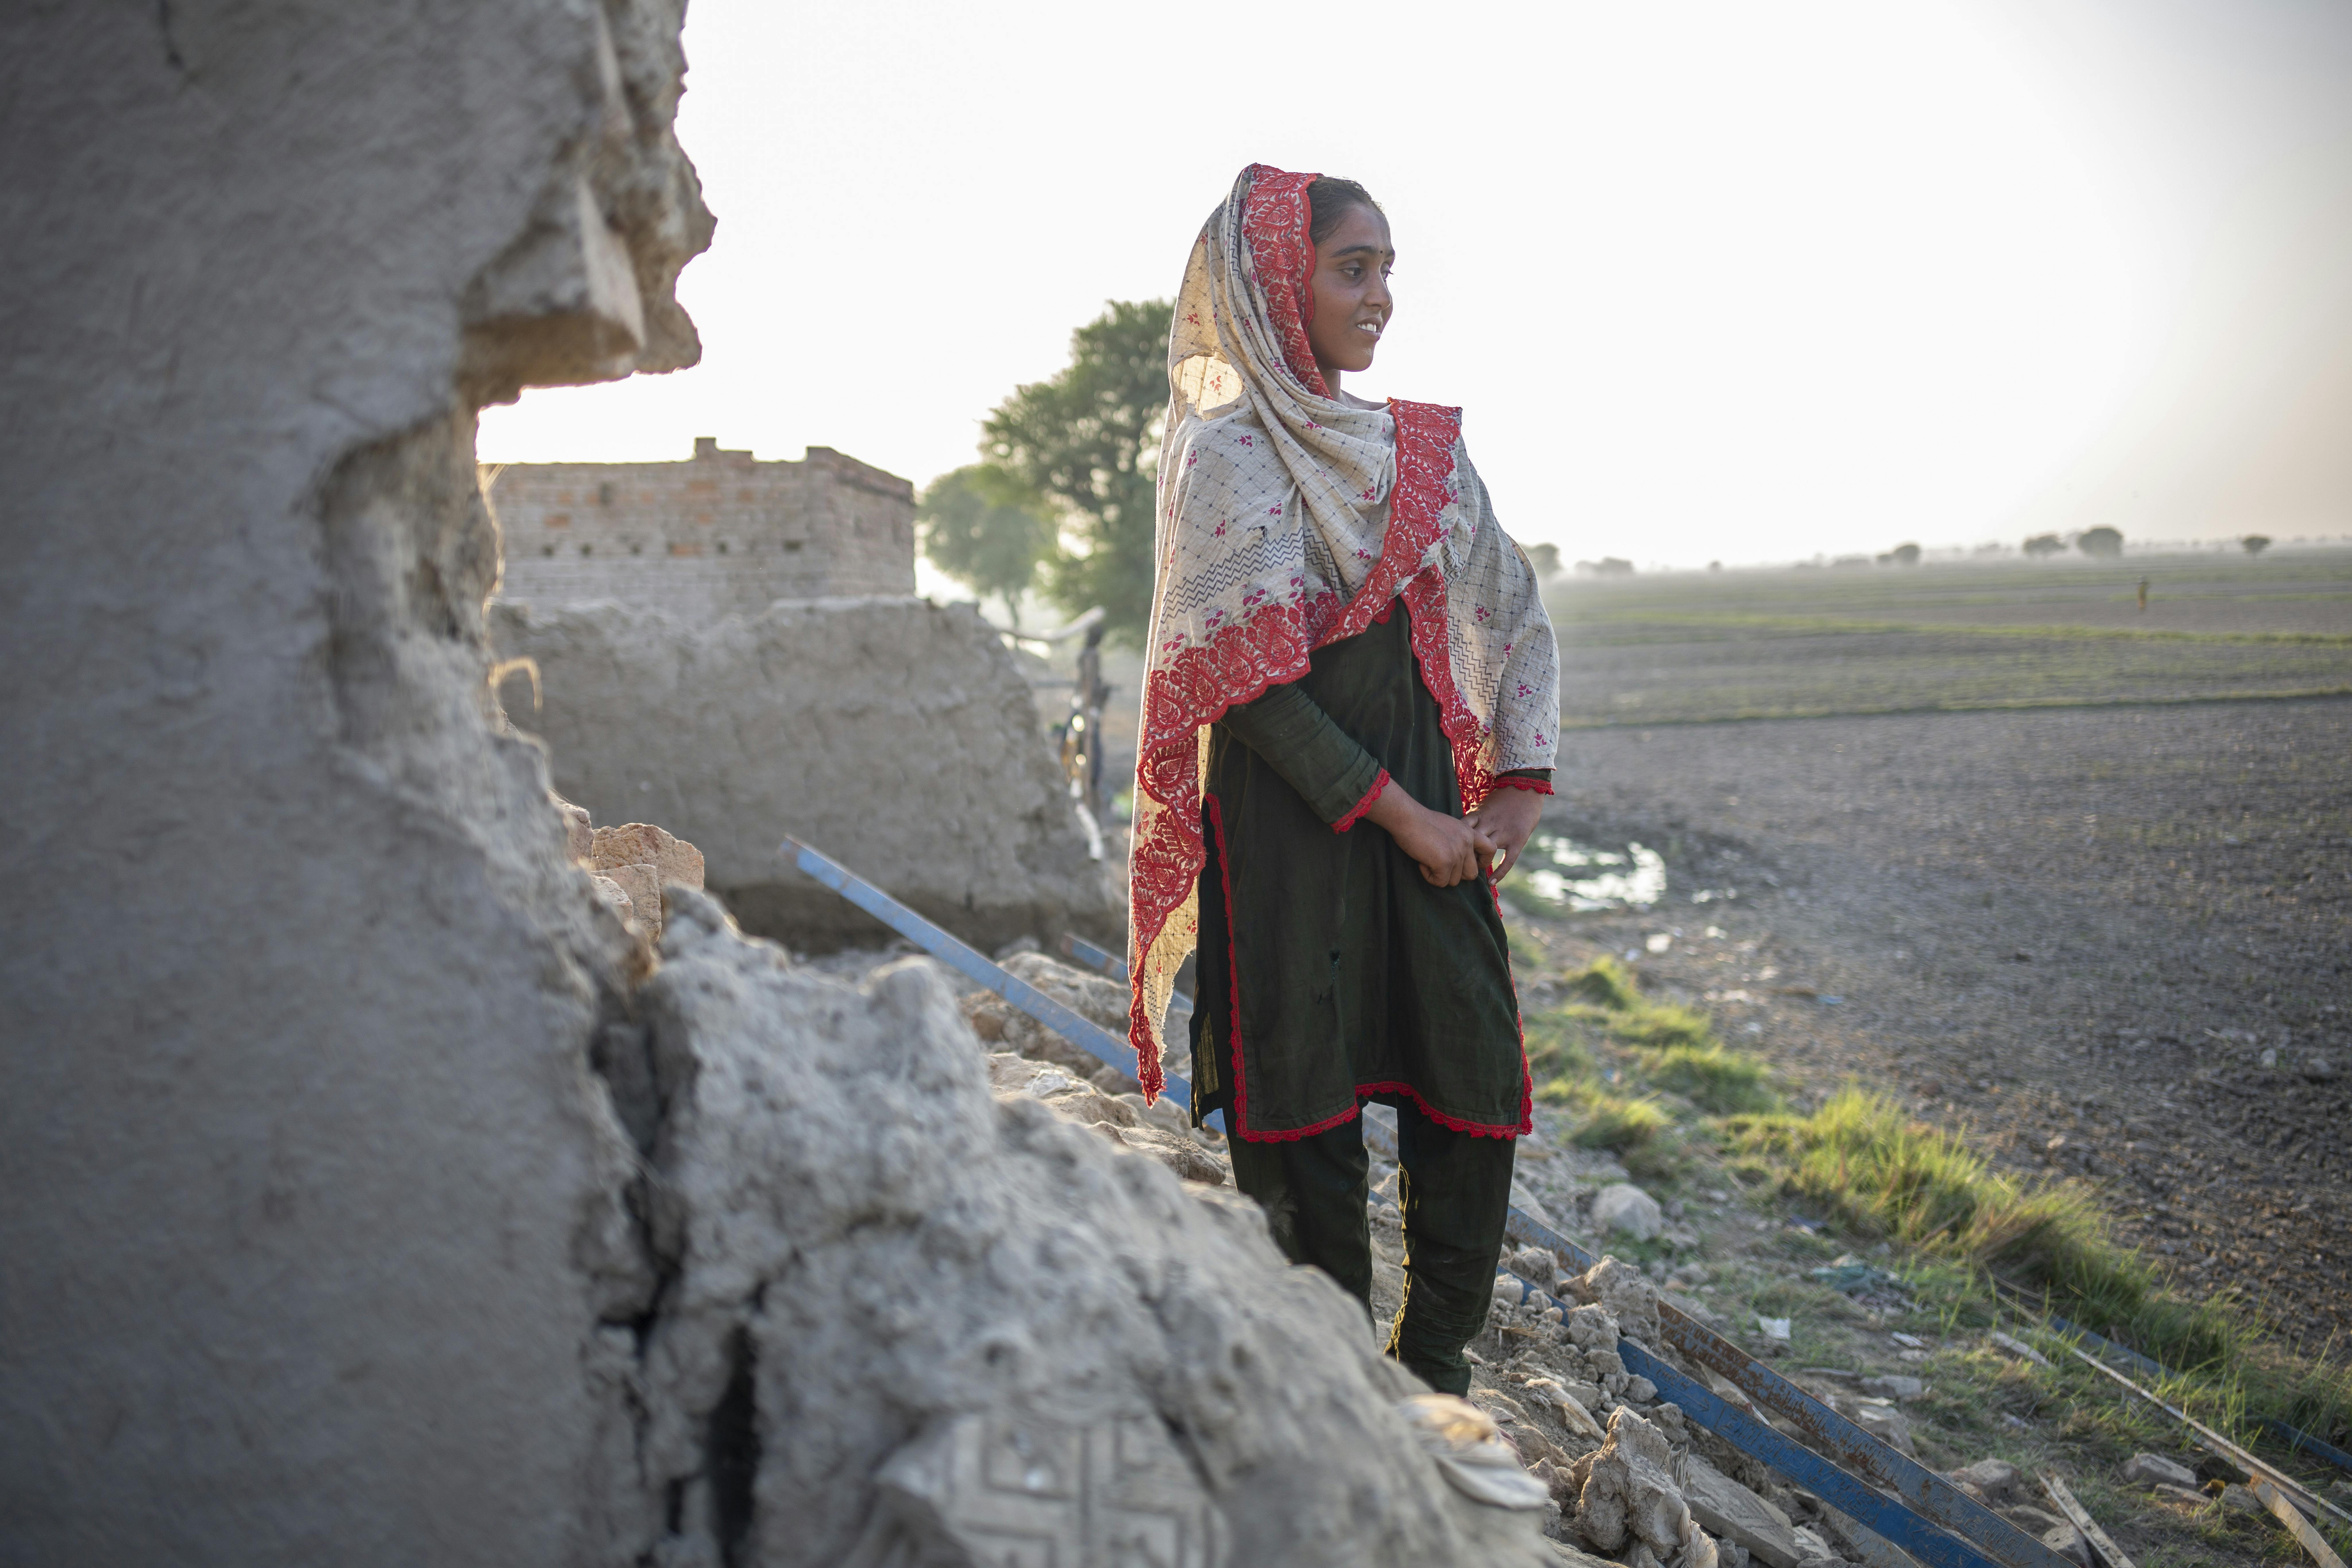 Pakistan, Sugrah si mette in posa, mentre si trova in una delle zone più colpite dall'alluvione della scorsa estate in Pakistan